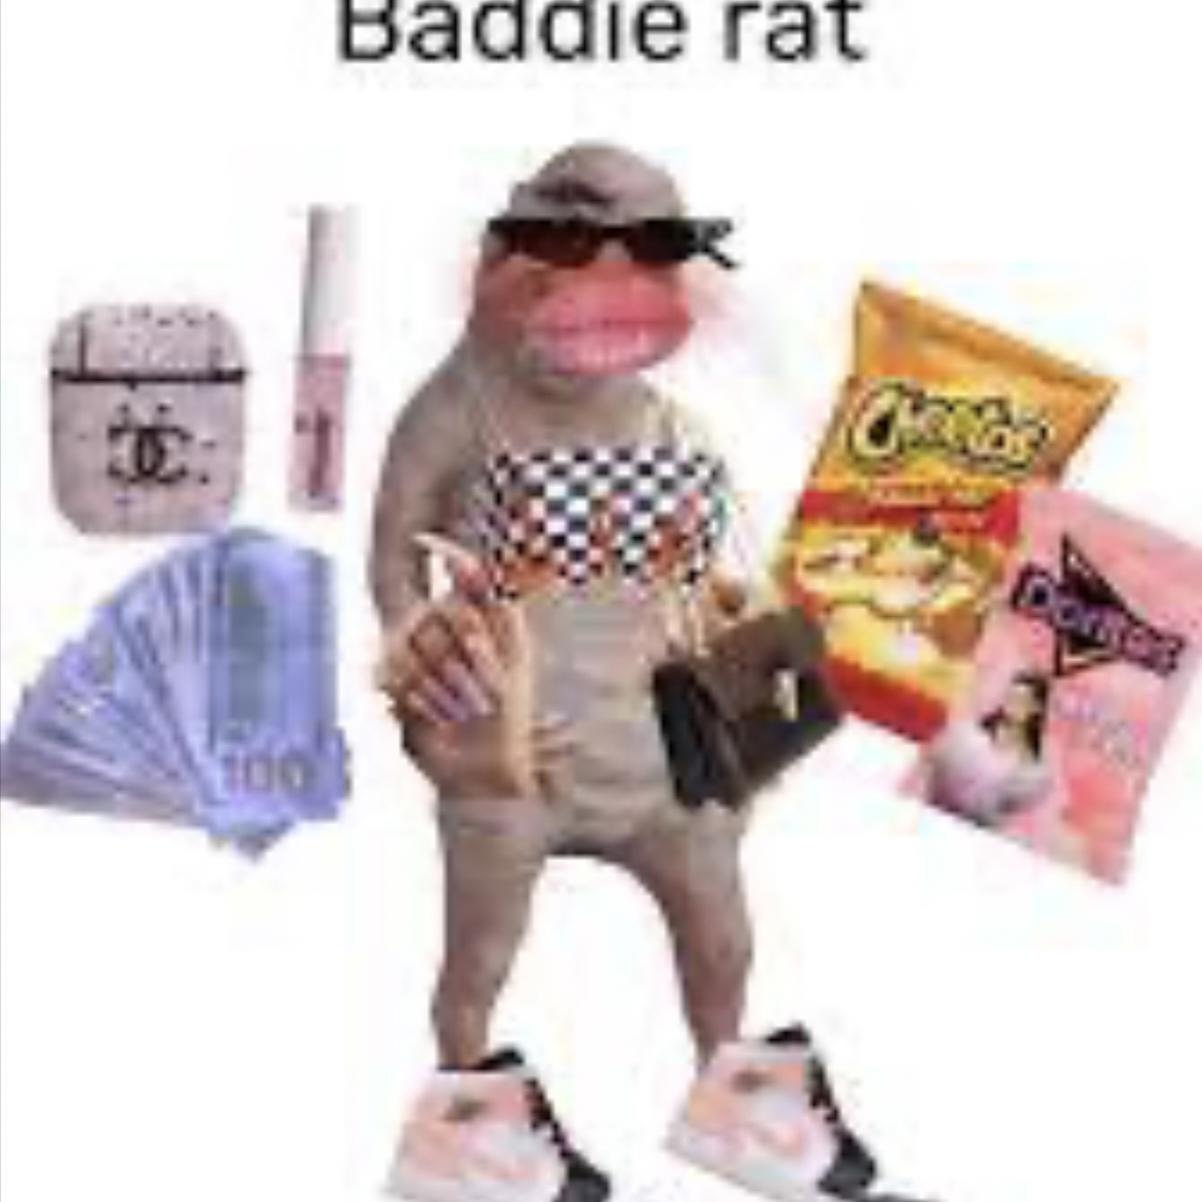 badie rat 's images